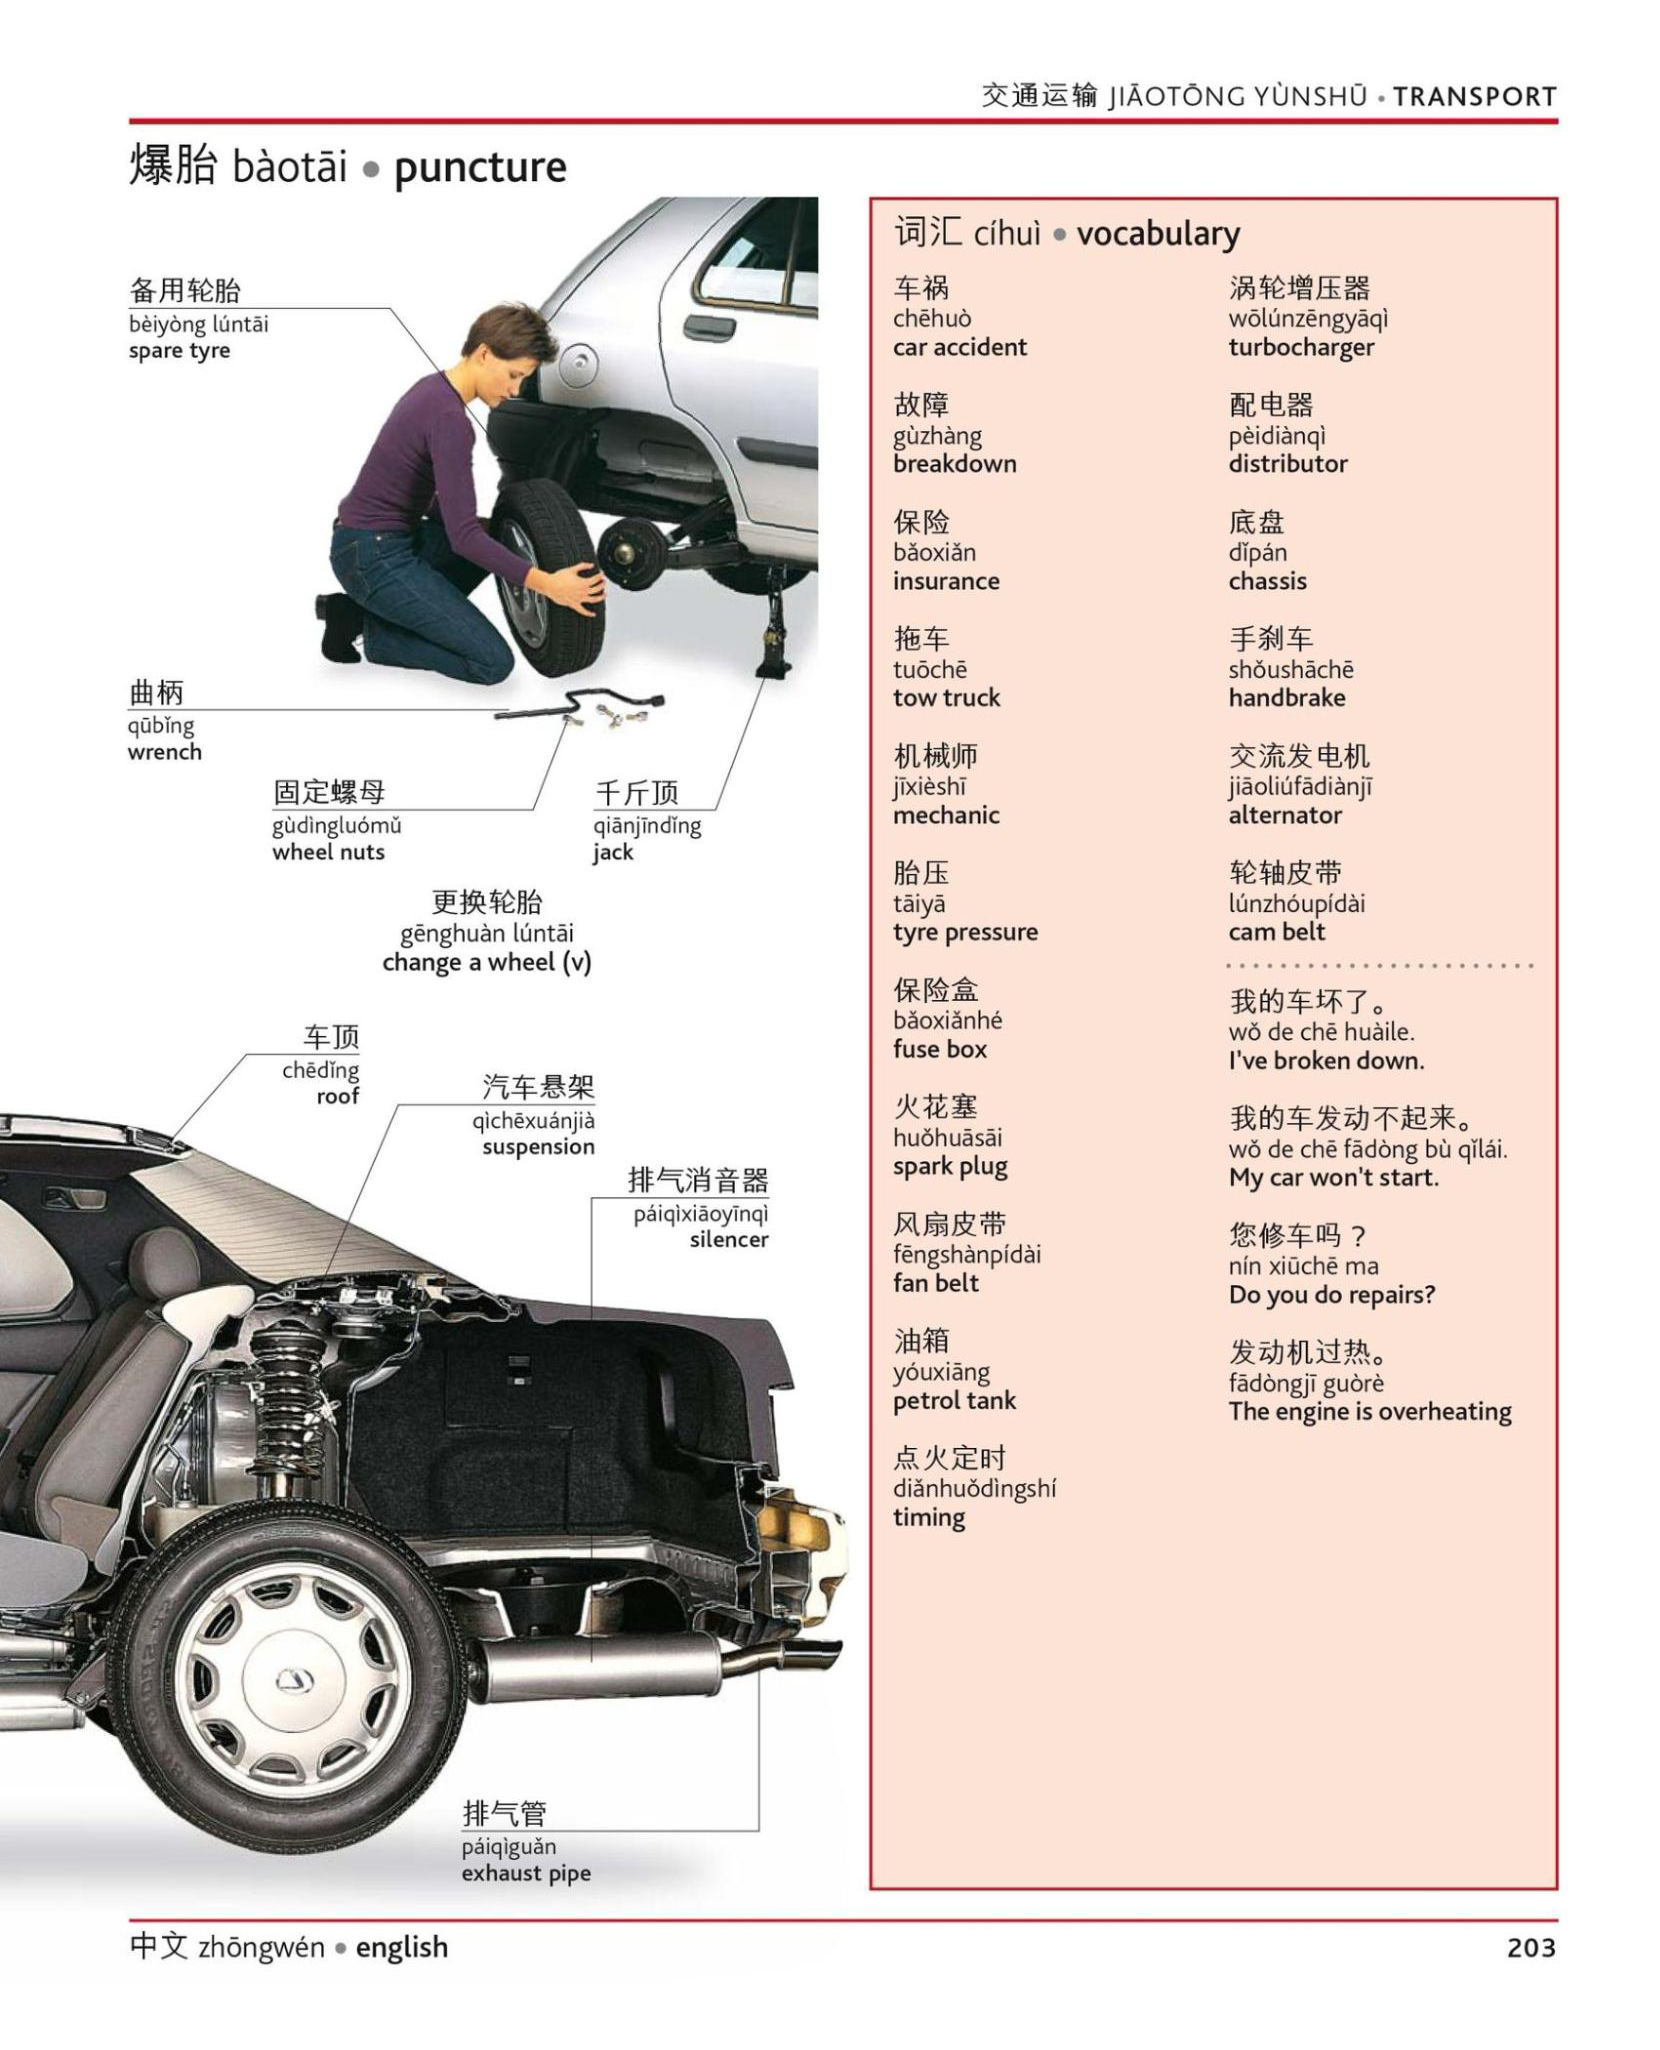 Примеры запчастей и их наименования на китайском и английском. Источник: журнал Jiaotong Yunshu